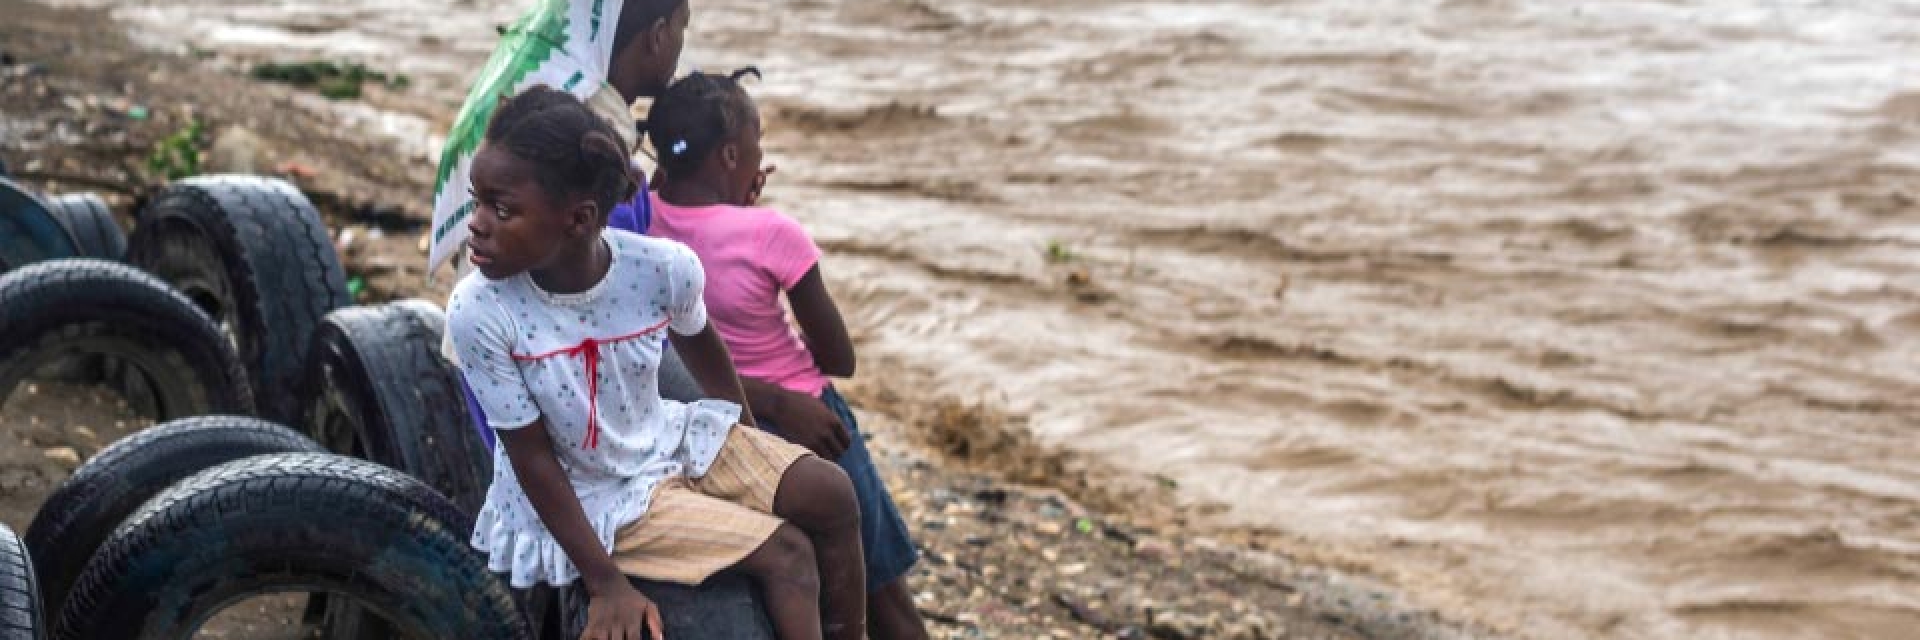 Hurricane Matthew caused massive floods in Haiti